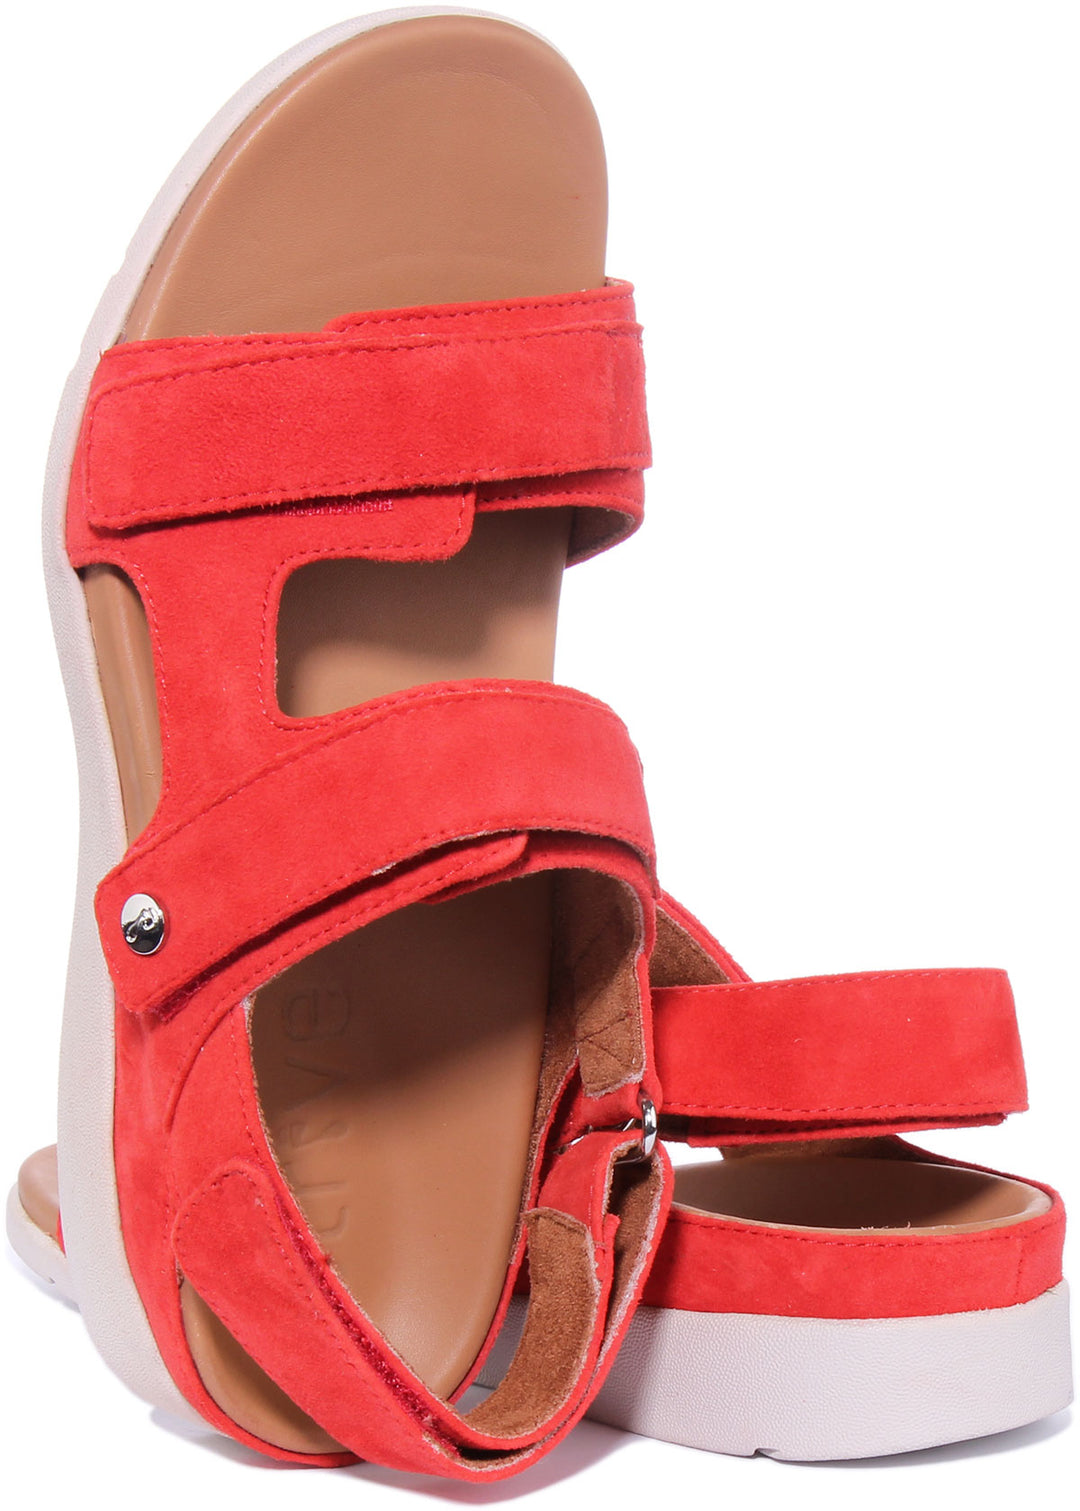 Strive Aruba Frauen Leder Sandale Mit Drei Verstellbare Riemen Rot